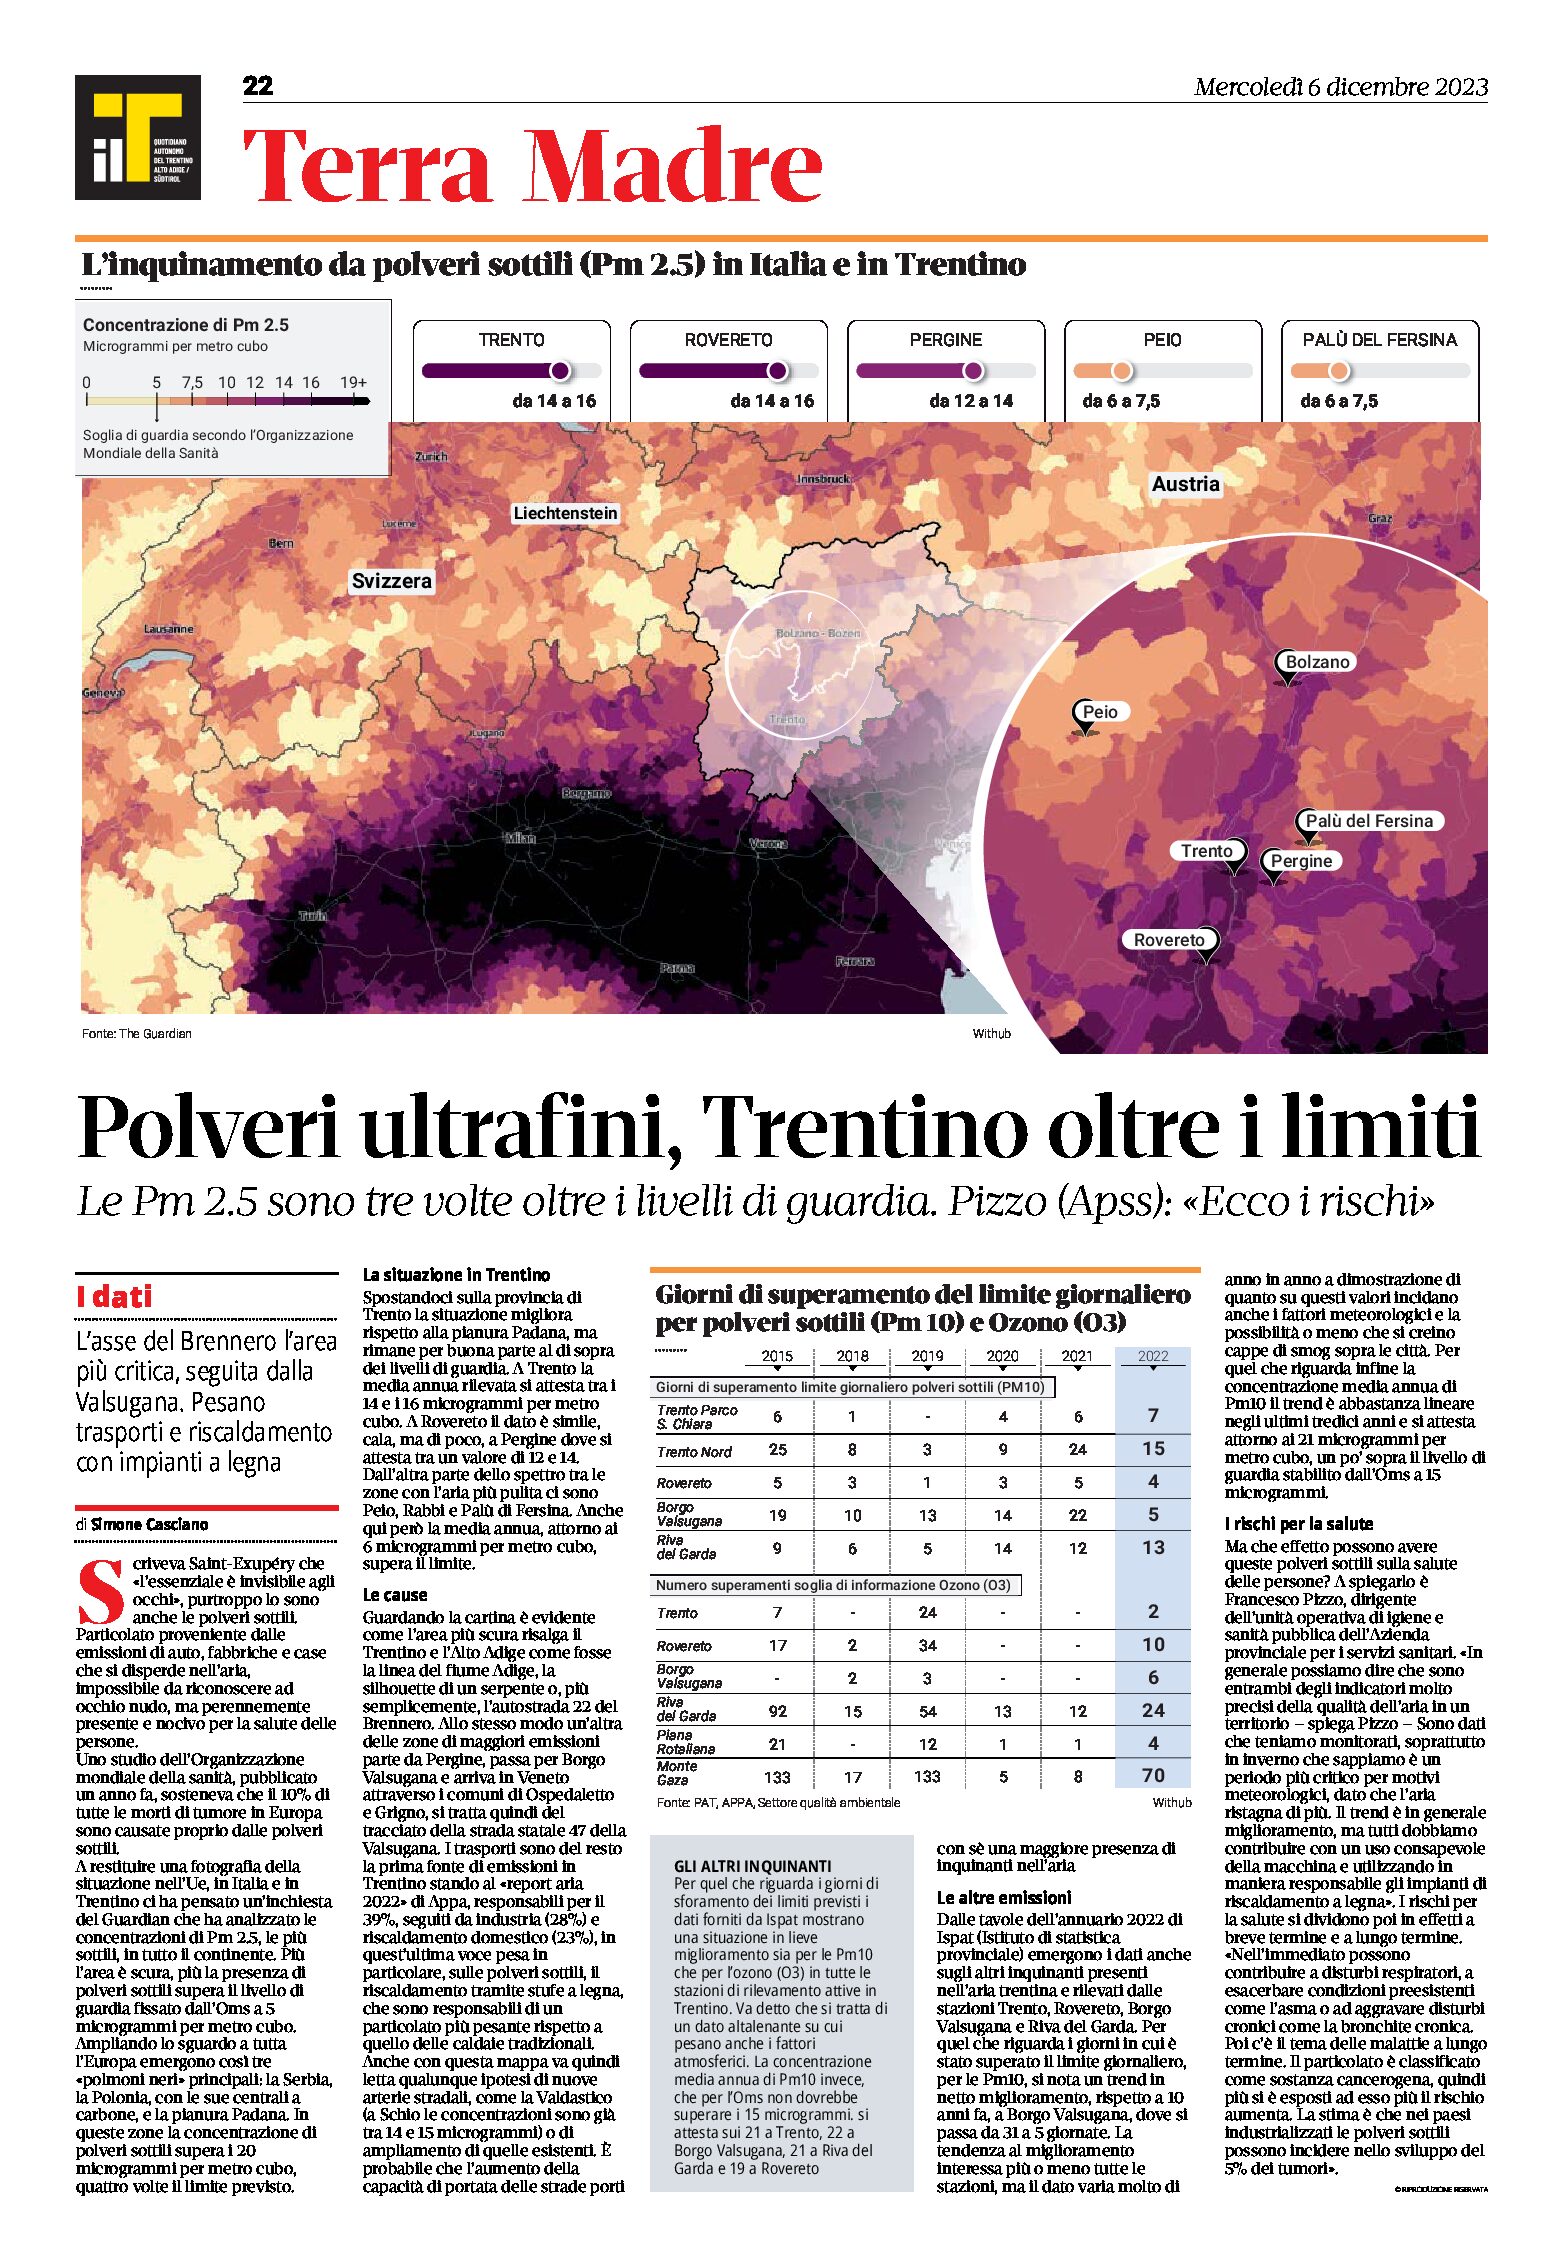 Polveri ultrafini: Trentino oltre i limiti. Le Pm 2.5 sono tre volte oltre i livelli di guardia